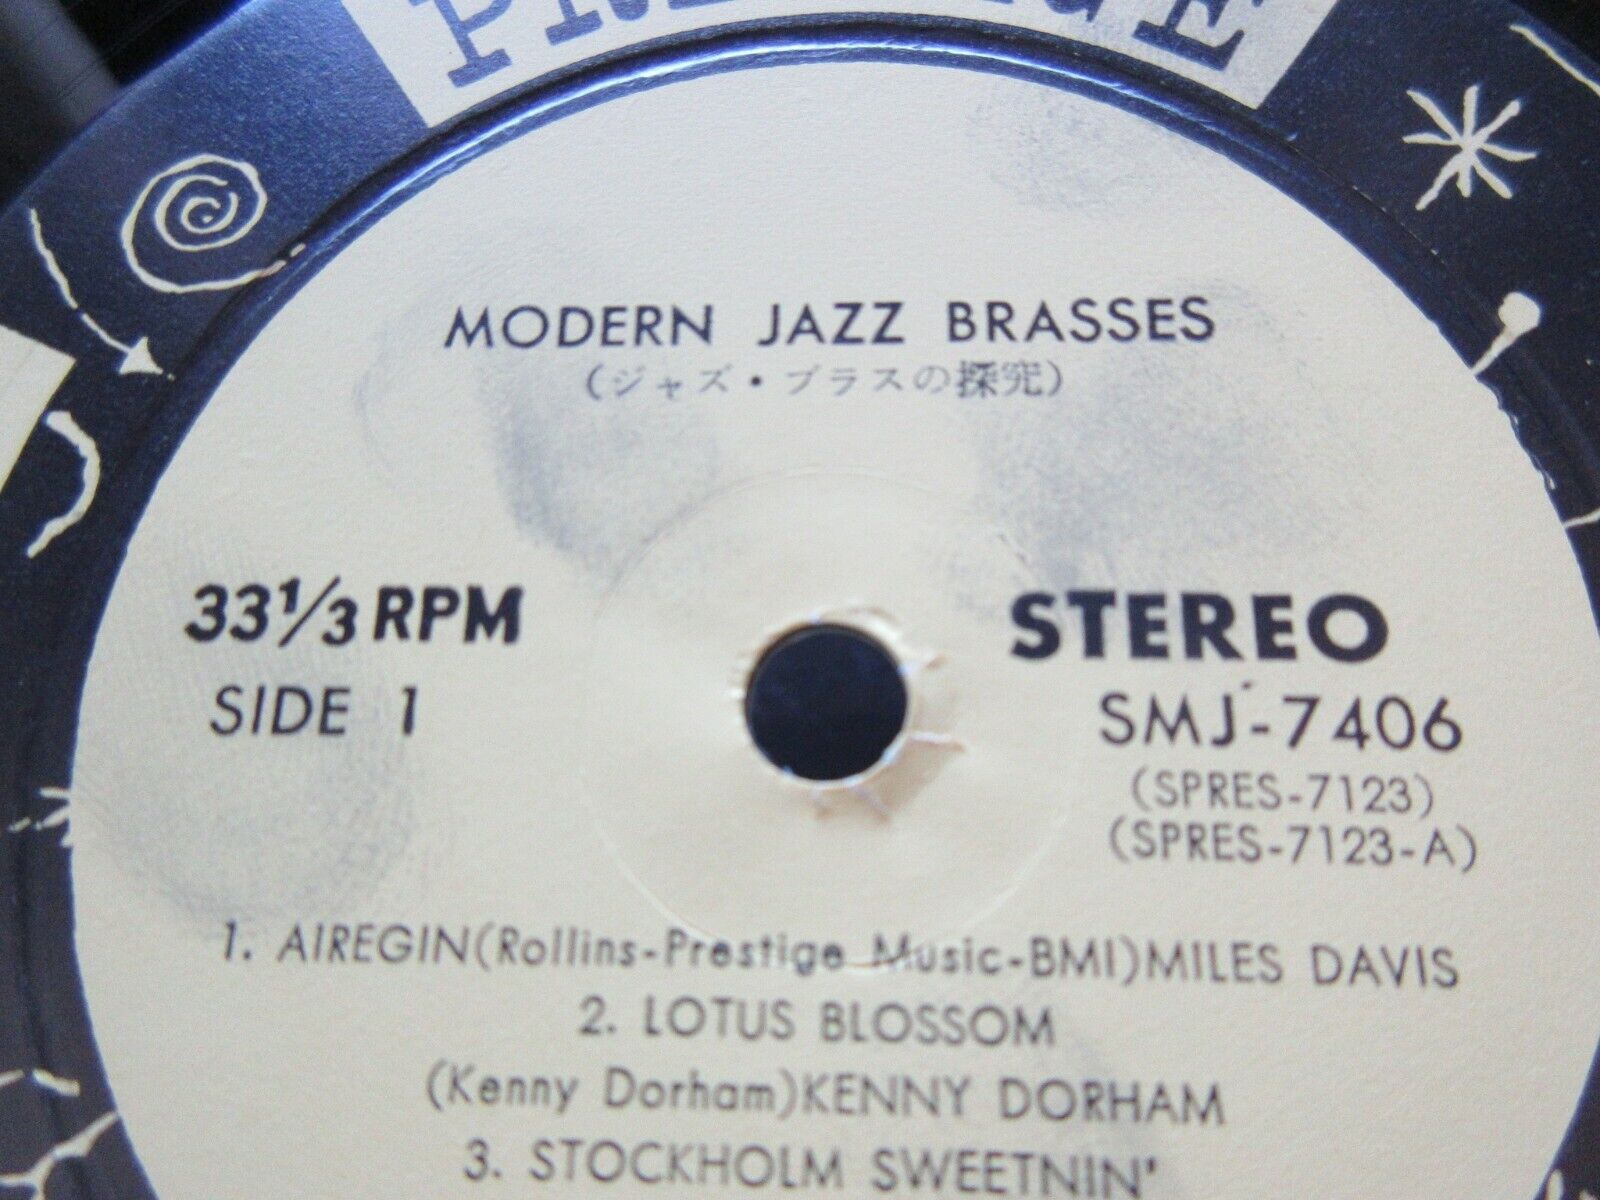 Modern Jazz Brasses Japan Vinyl LP OBI Miles Davis Chet Baker Farmer Fuller  7406